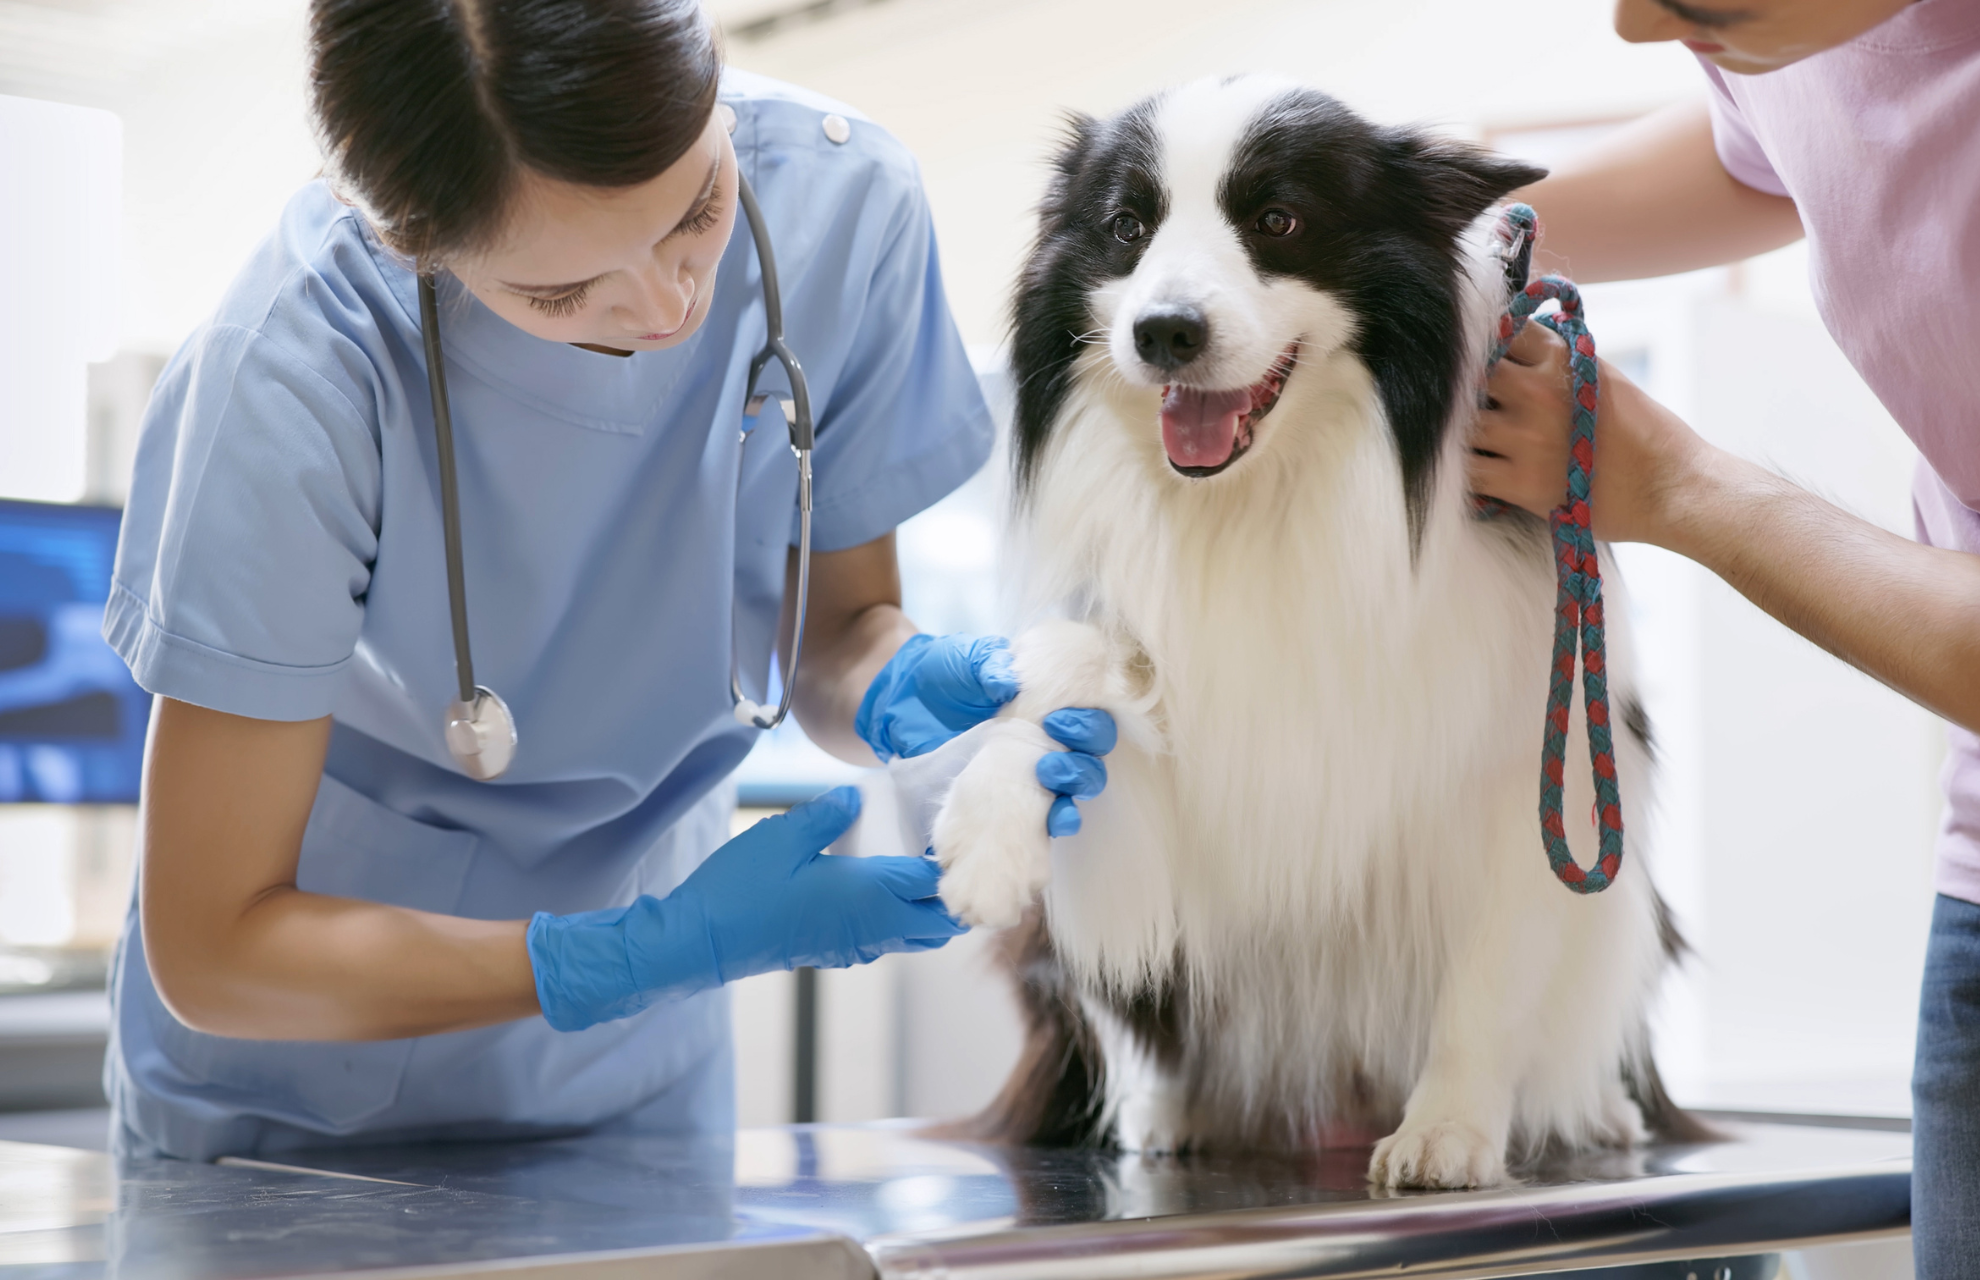 veterinariant bandaging dog's leg